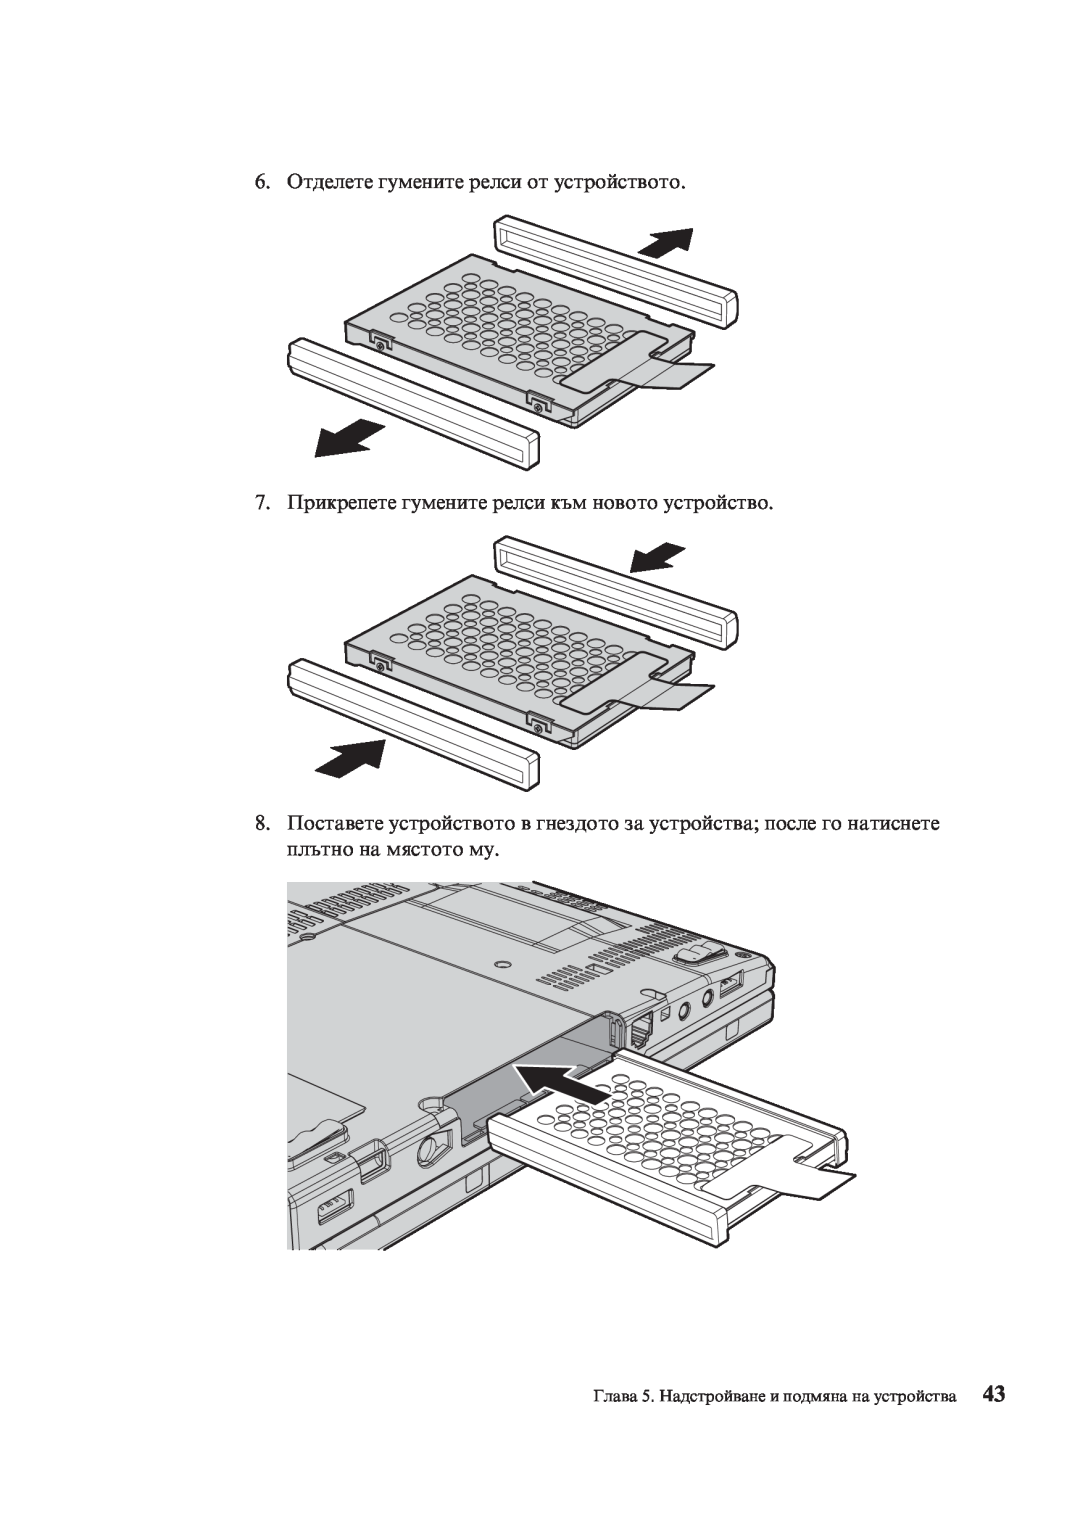 Lenovo X200 manual 6. Отделете гумените релси от устройството, Глава 5. Надстройване и подмяна на устройства 